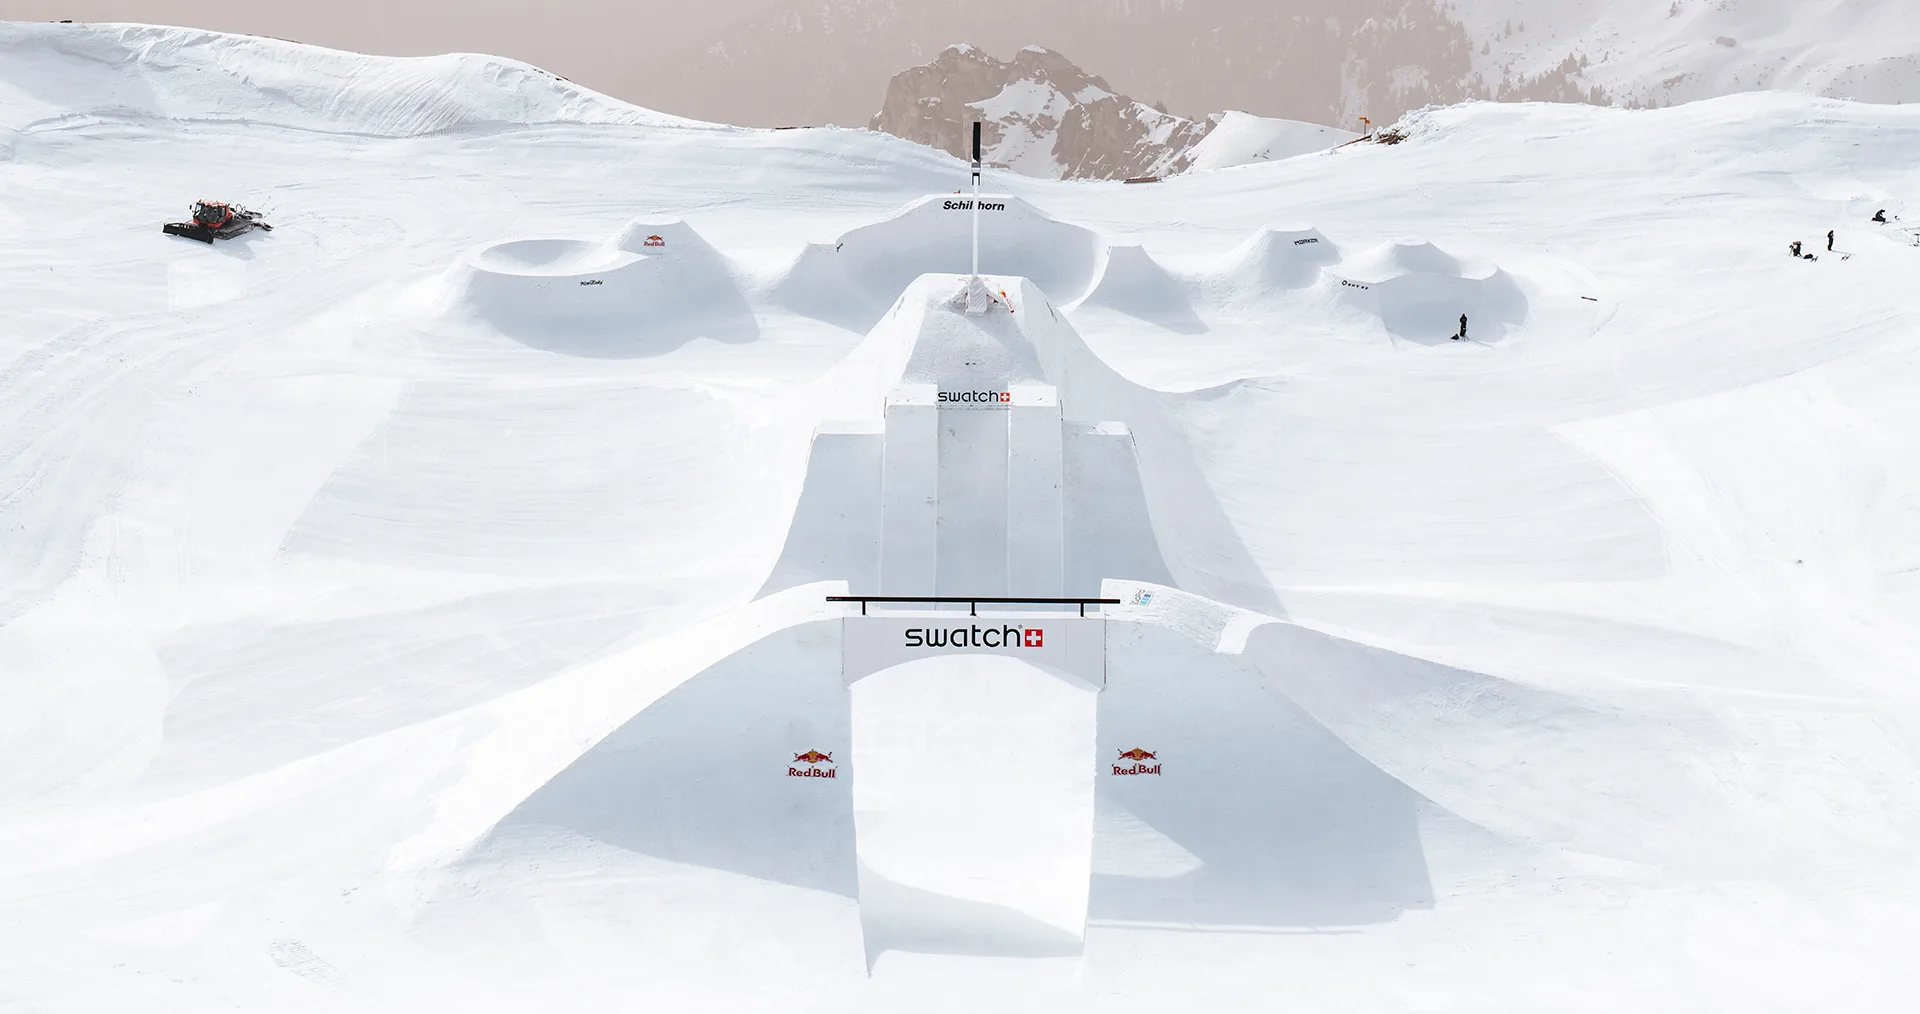 SWATCH NINES SNOW 在瑞士雪朗峰滑出新高度